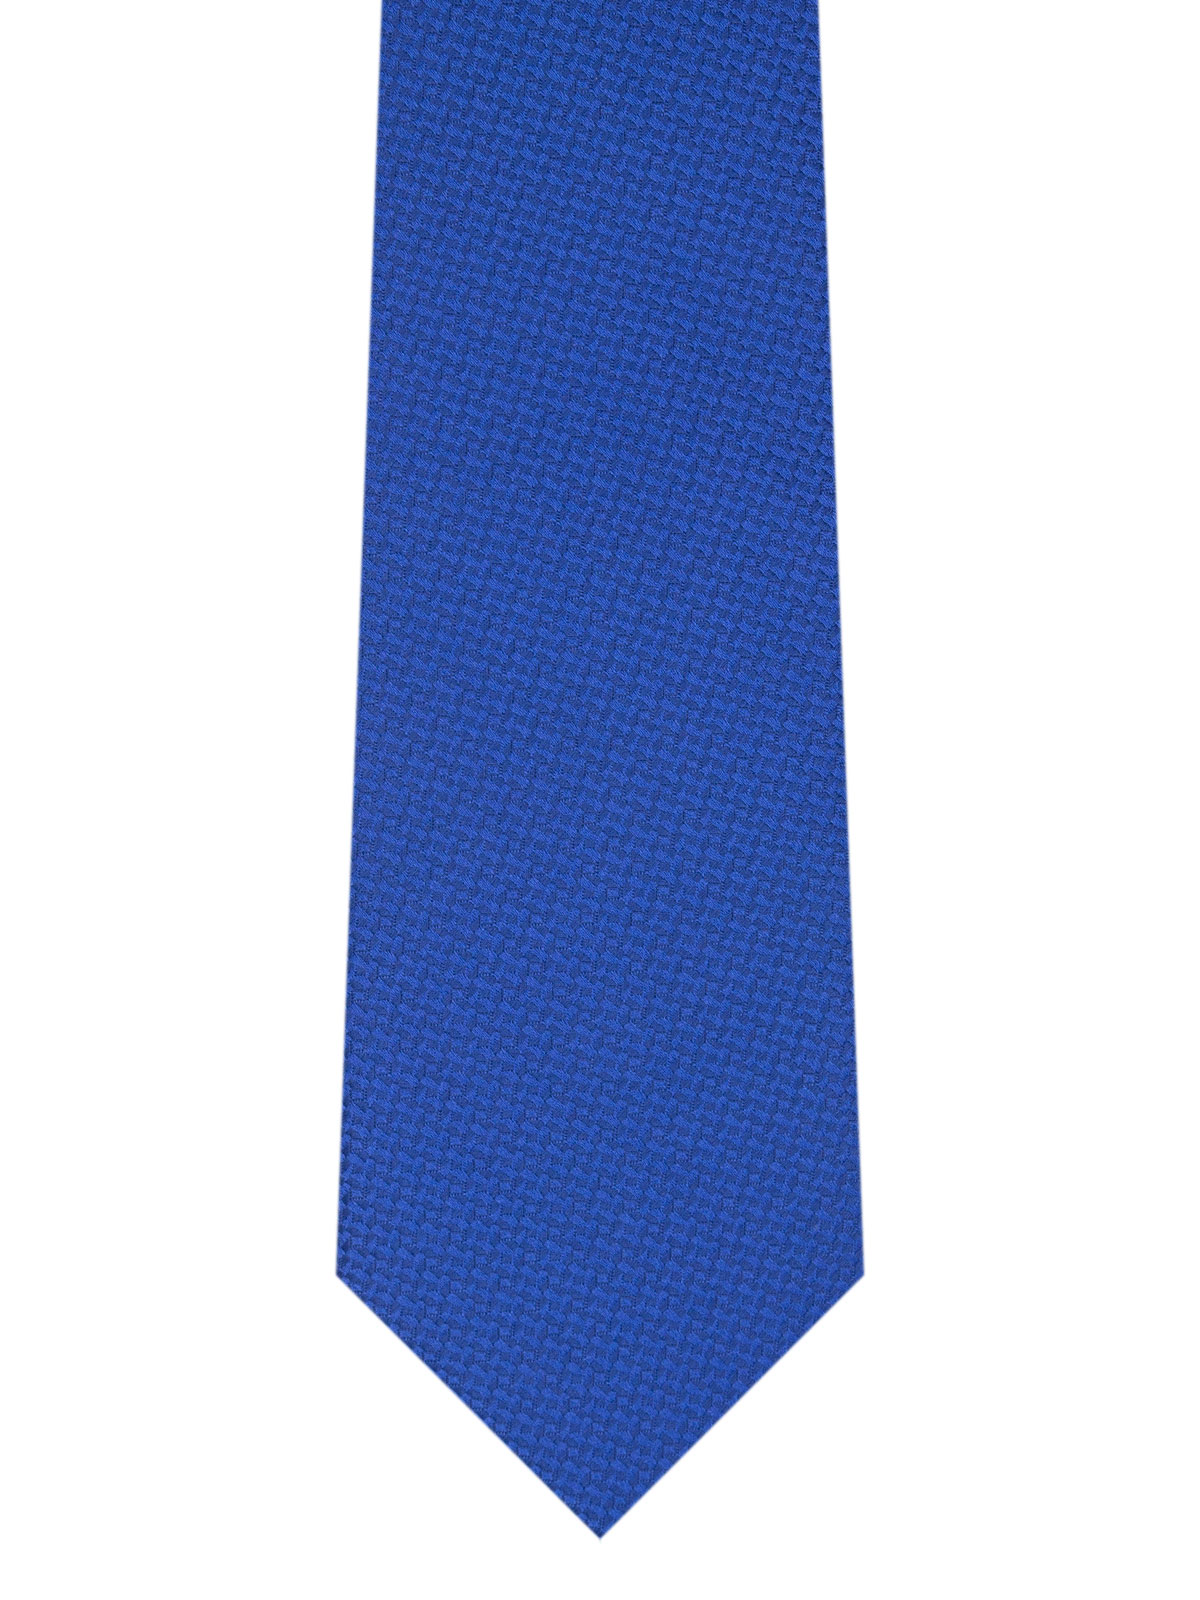 Δομημένη μπλε γραβάτα - 10191 - € 14.06 img2